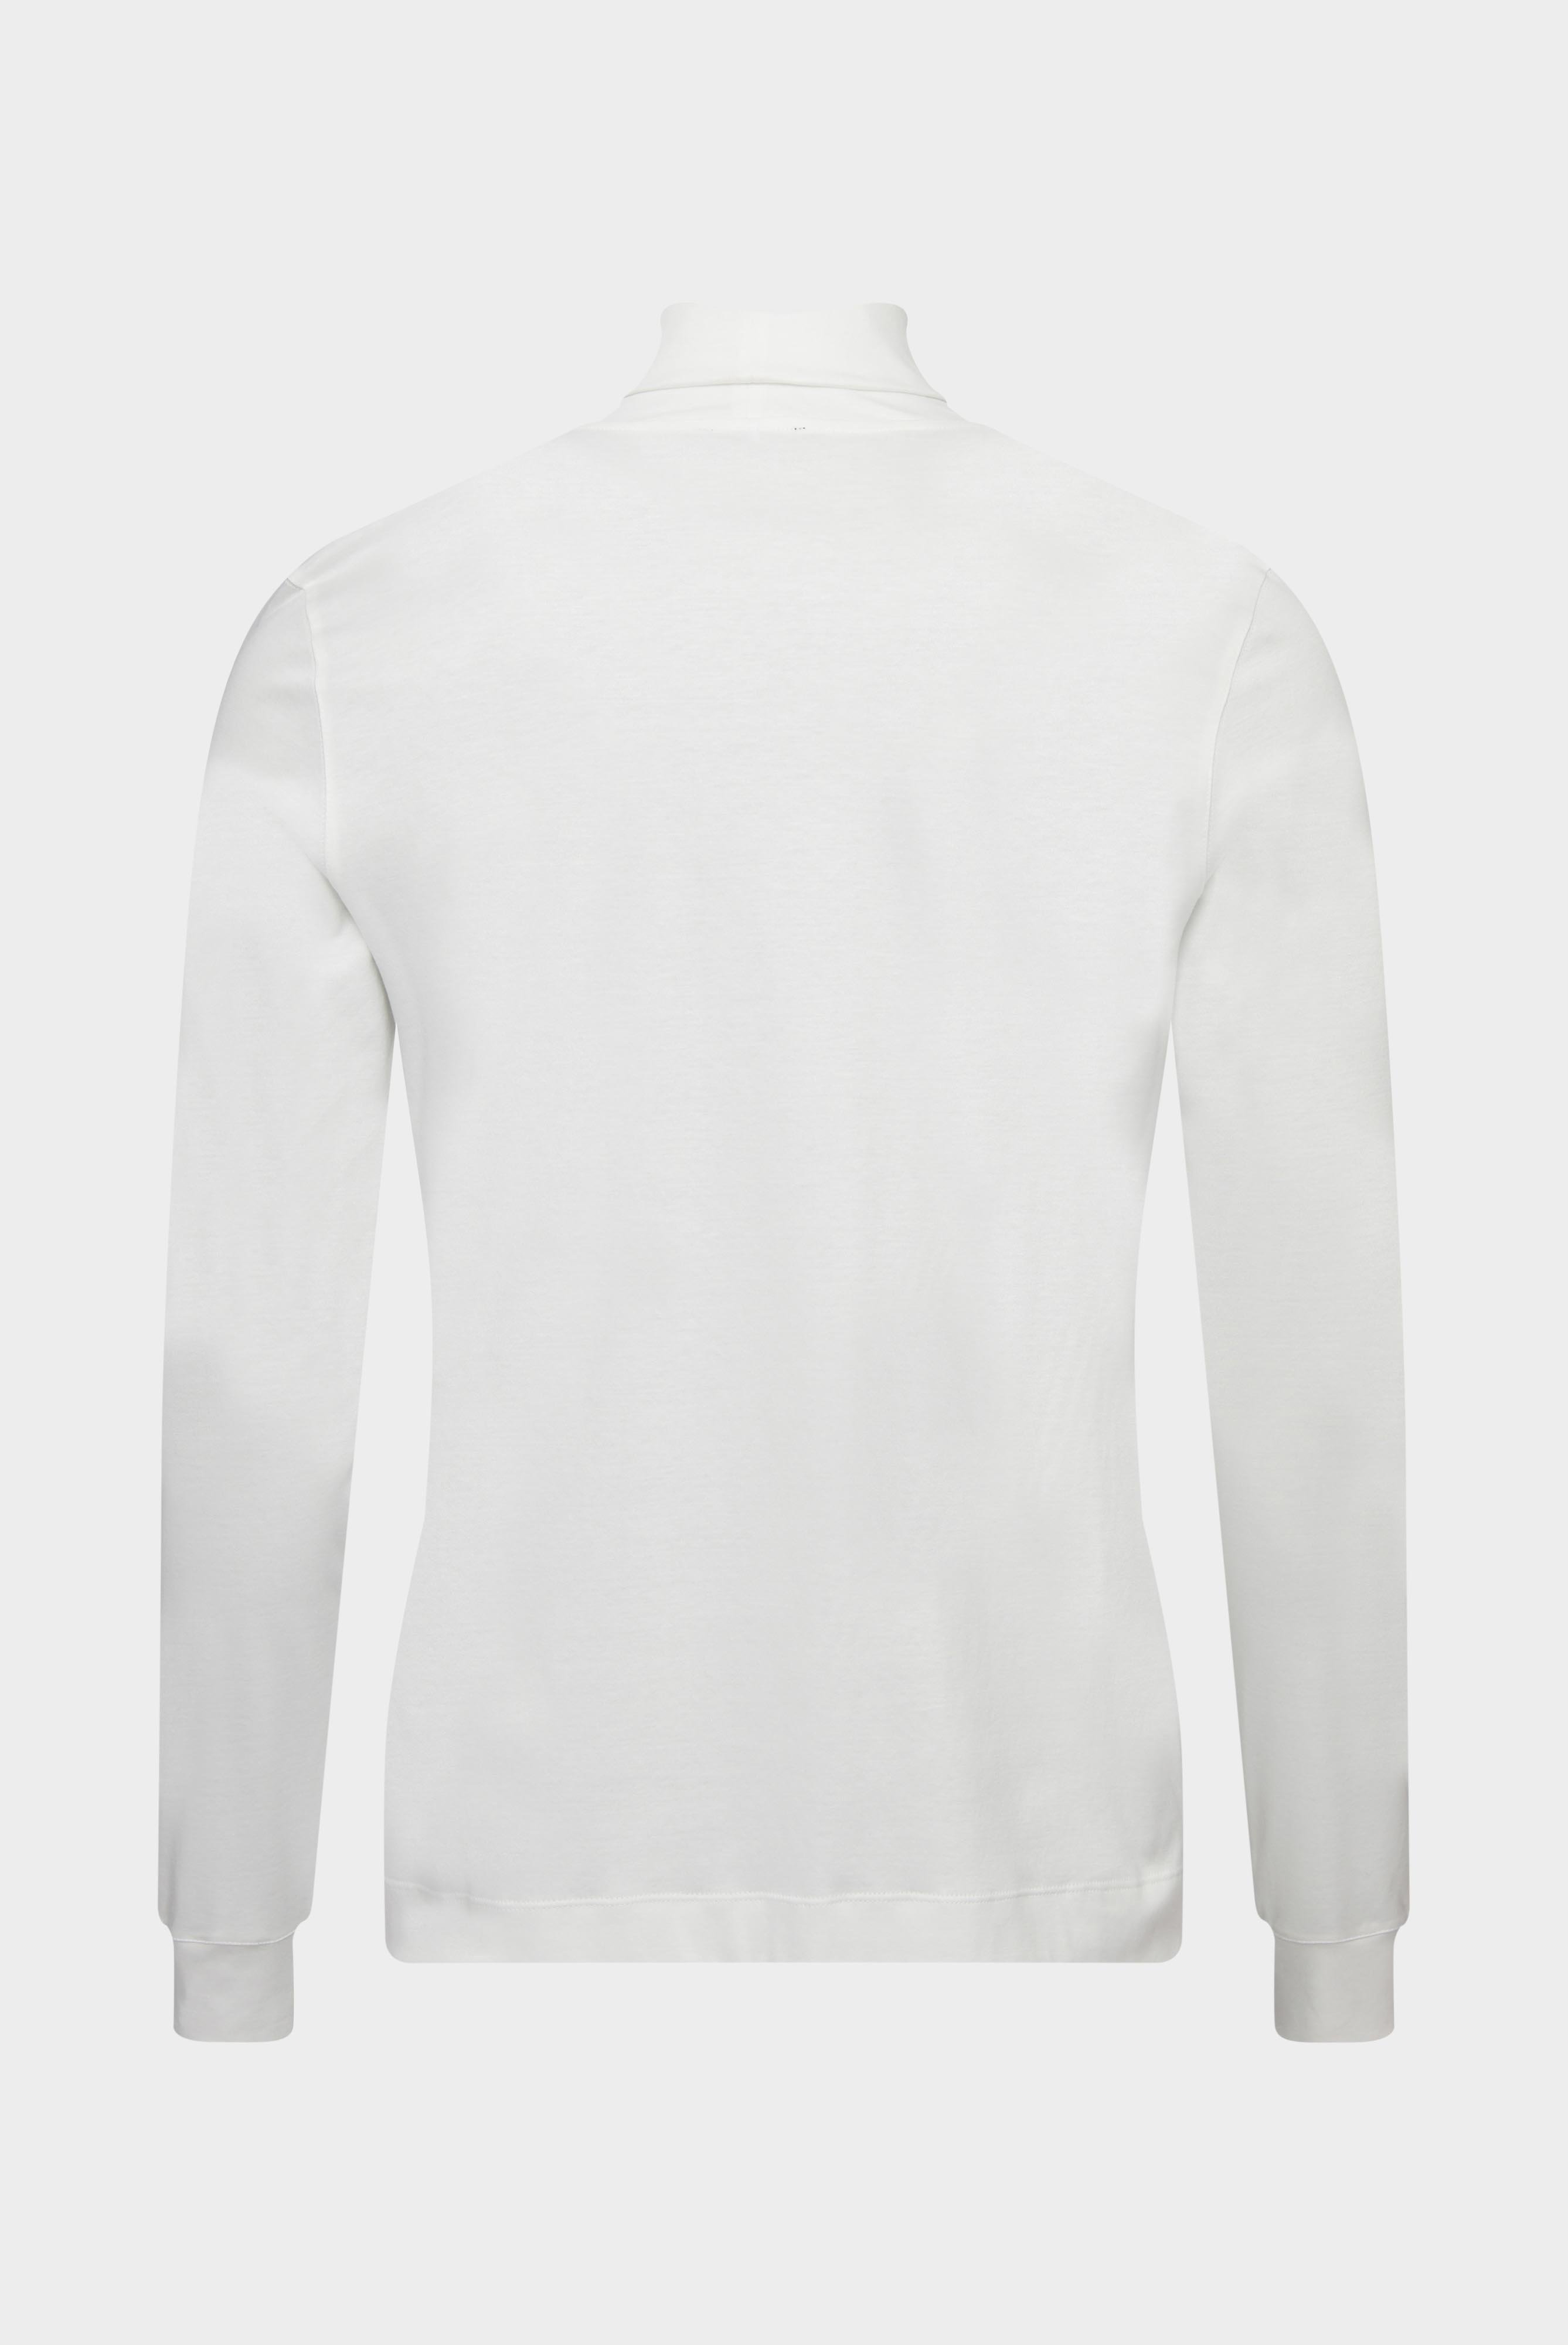 T-Shirts+Rollkragenshirt aus Jersey+20.1719.UX.180031.100.XL